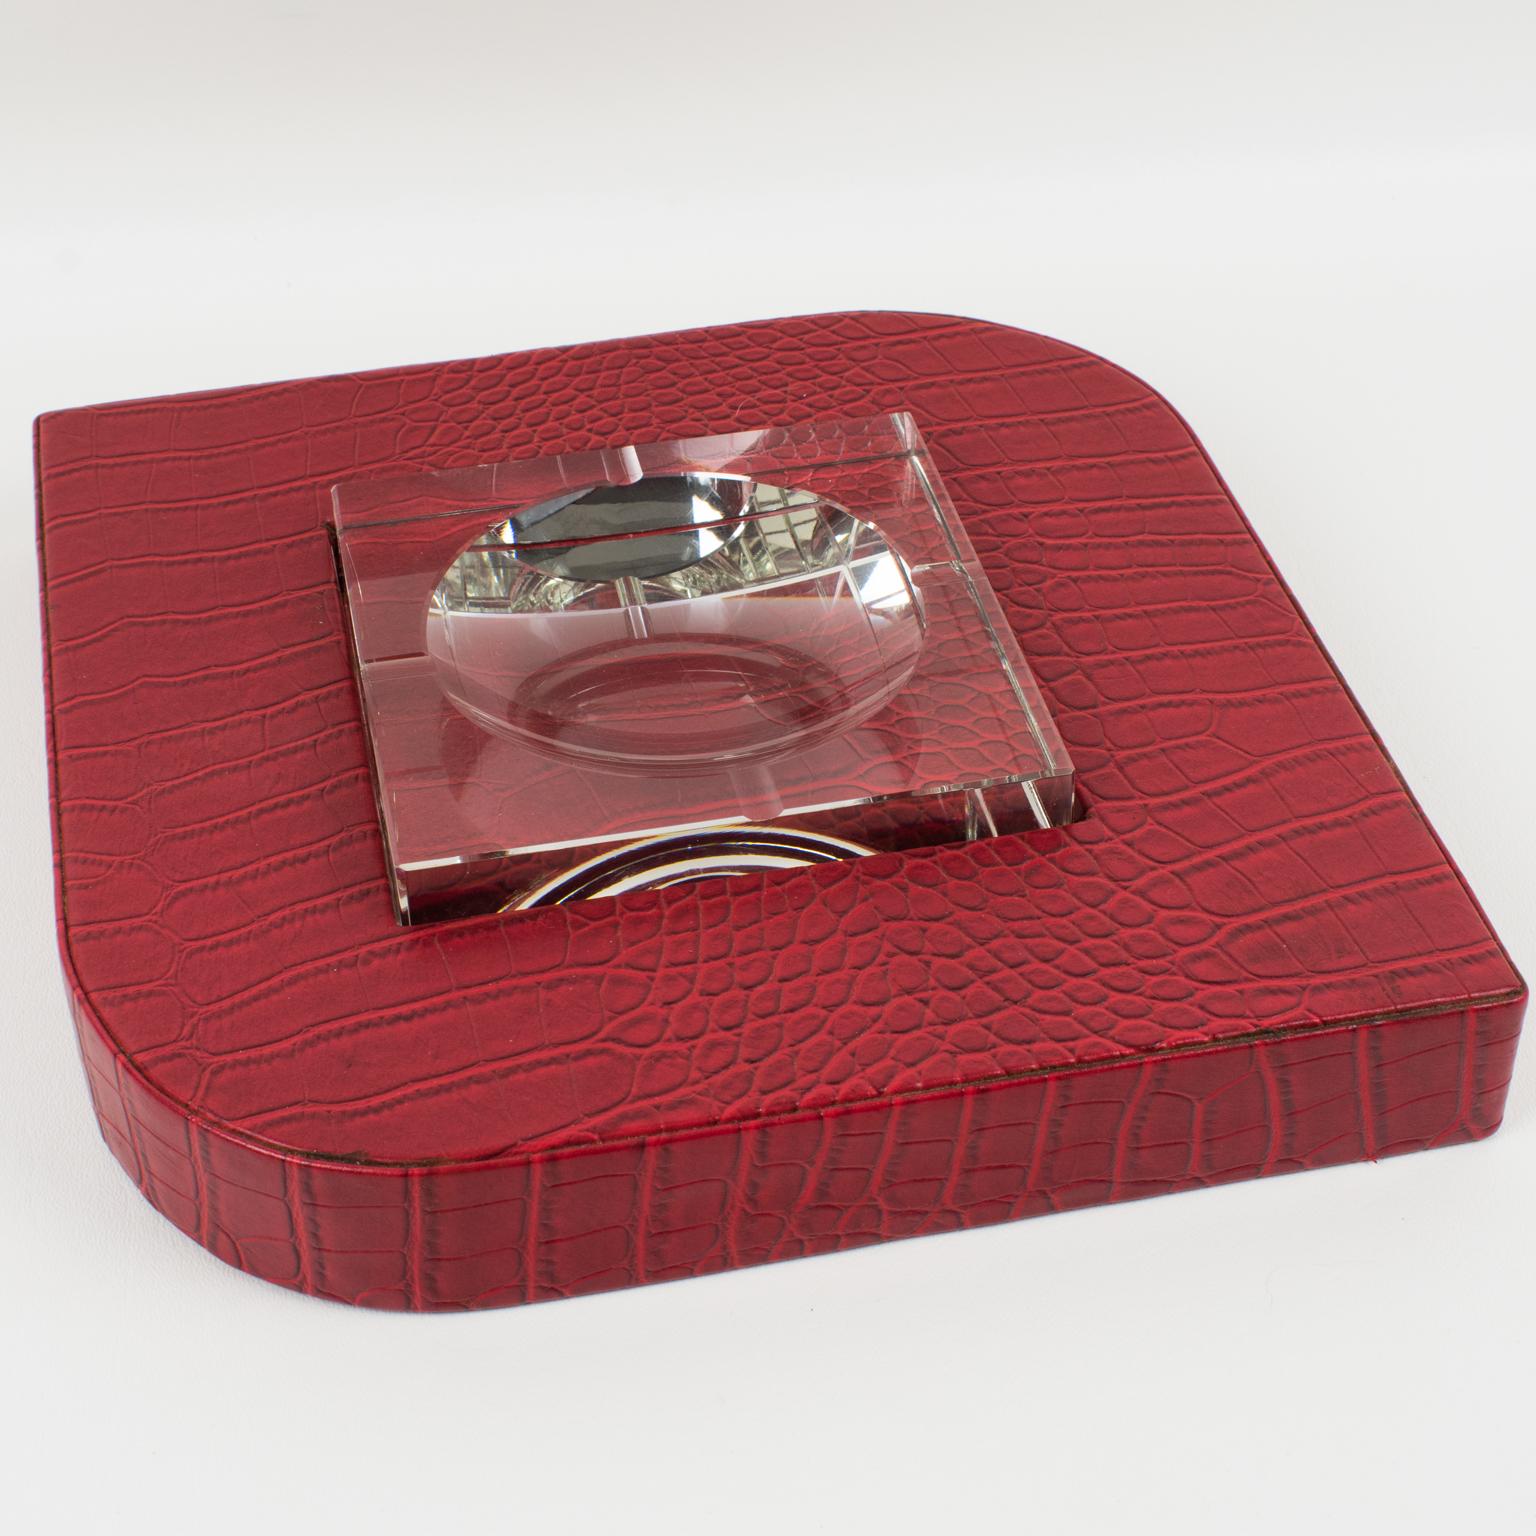 Diese stilvolle, modernistische Videopoche aus rotem Leder und Kristall erinnert in ihrem Design an die Arbeiten von Dupre-Lafon und wurde in den 1950er Jahren hergestellt. Das rote Leder mit Krokodilprägung ziert einen geometrischen Sockel, der